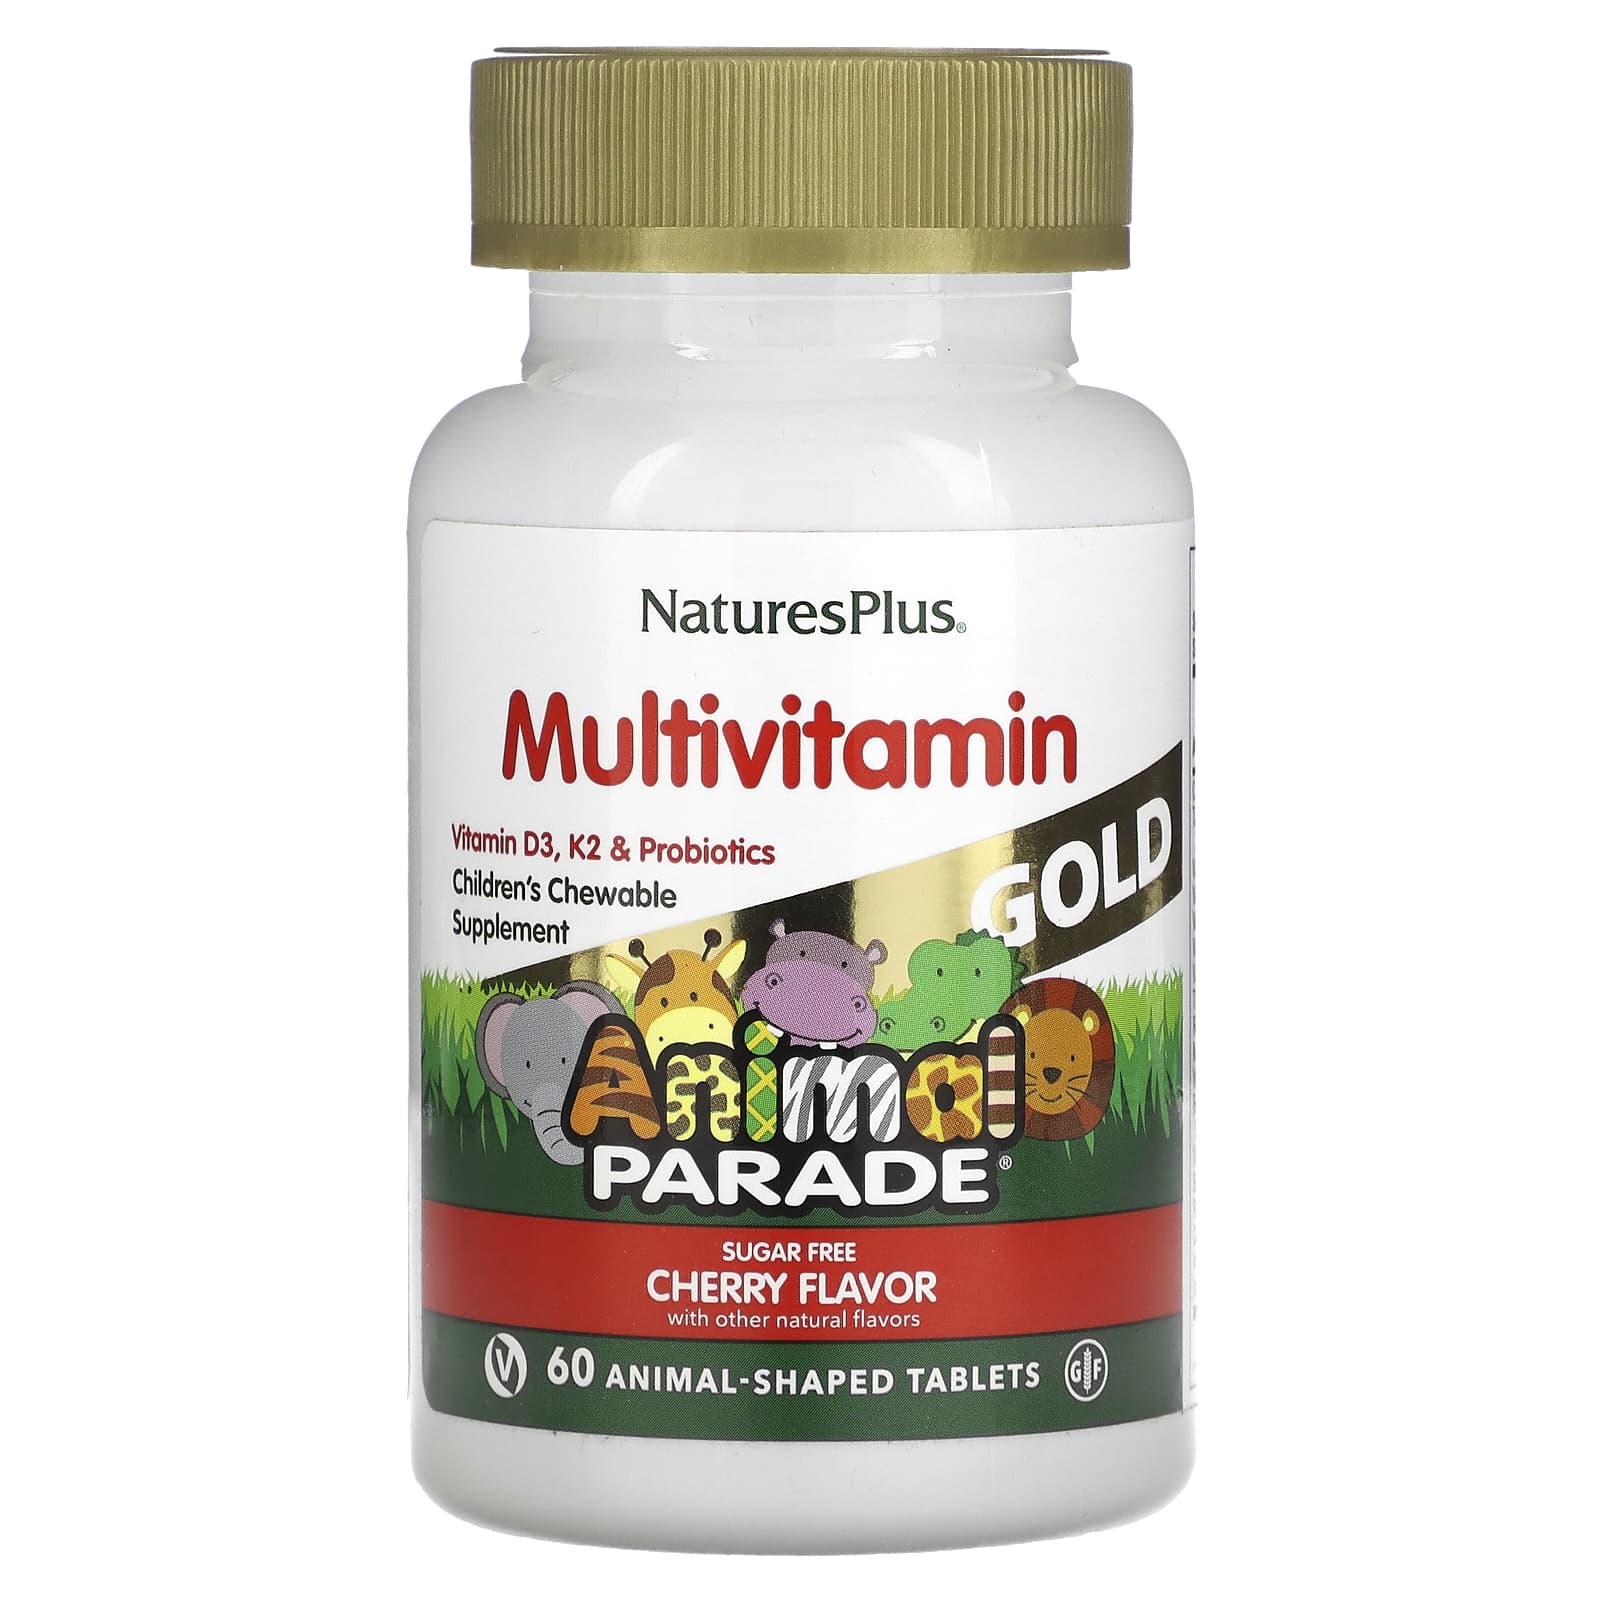 Мультивитамины NaturesPlus с микроэлементами для детей, со вкусом вишни, 60 таблеток в форме животных